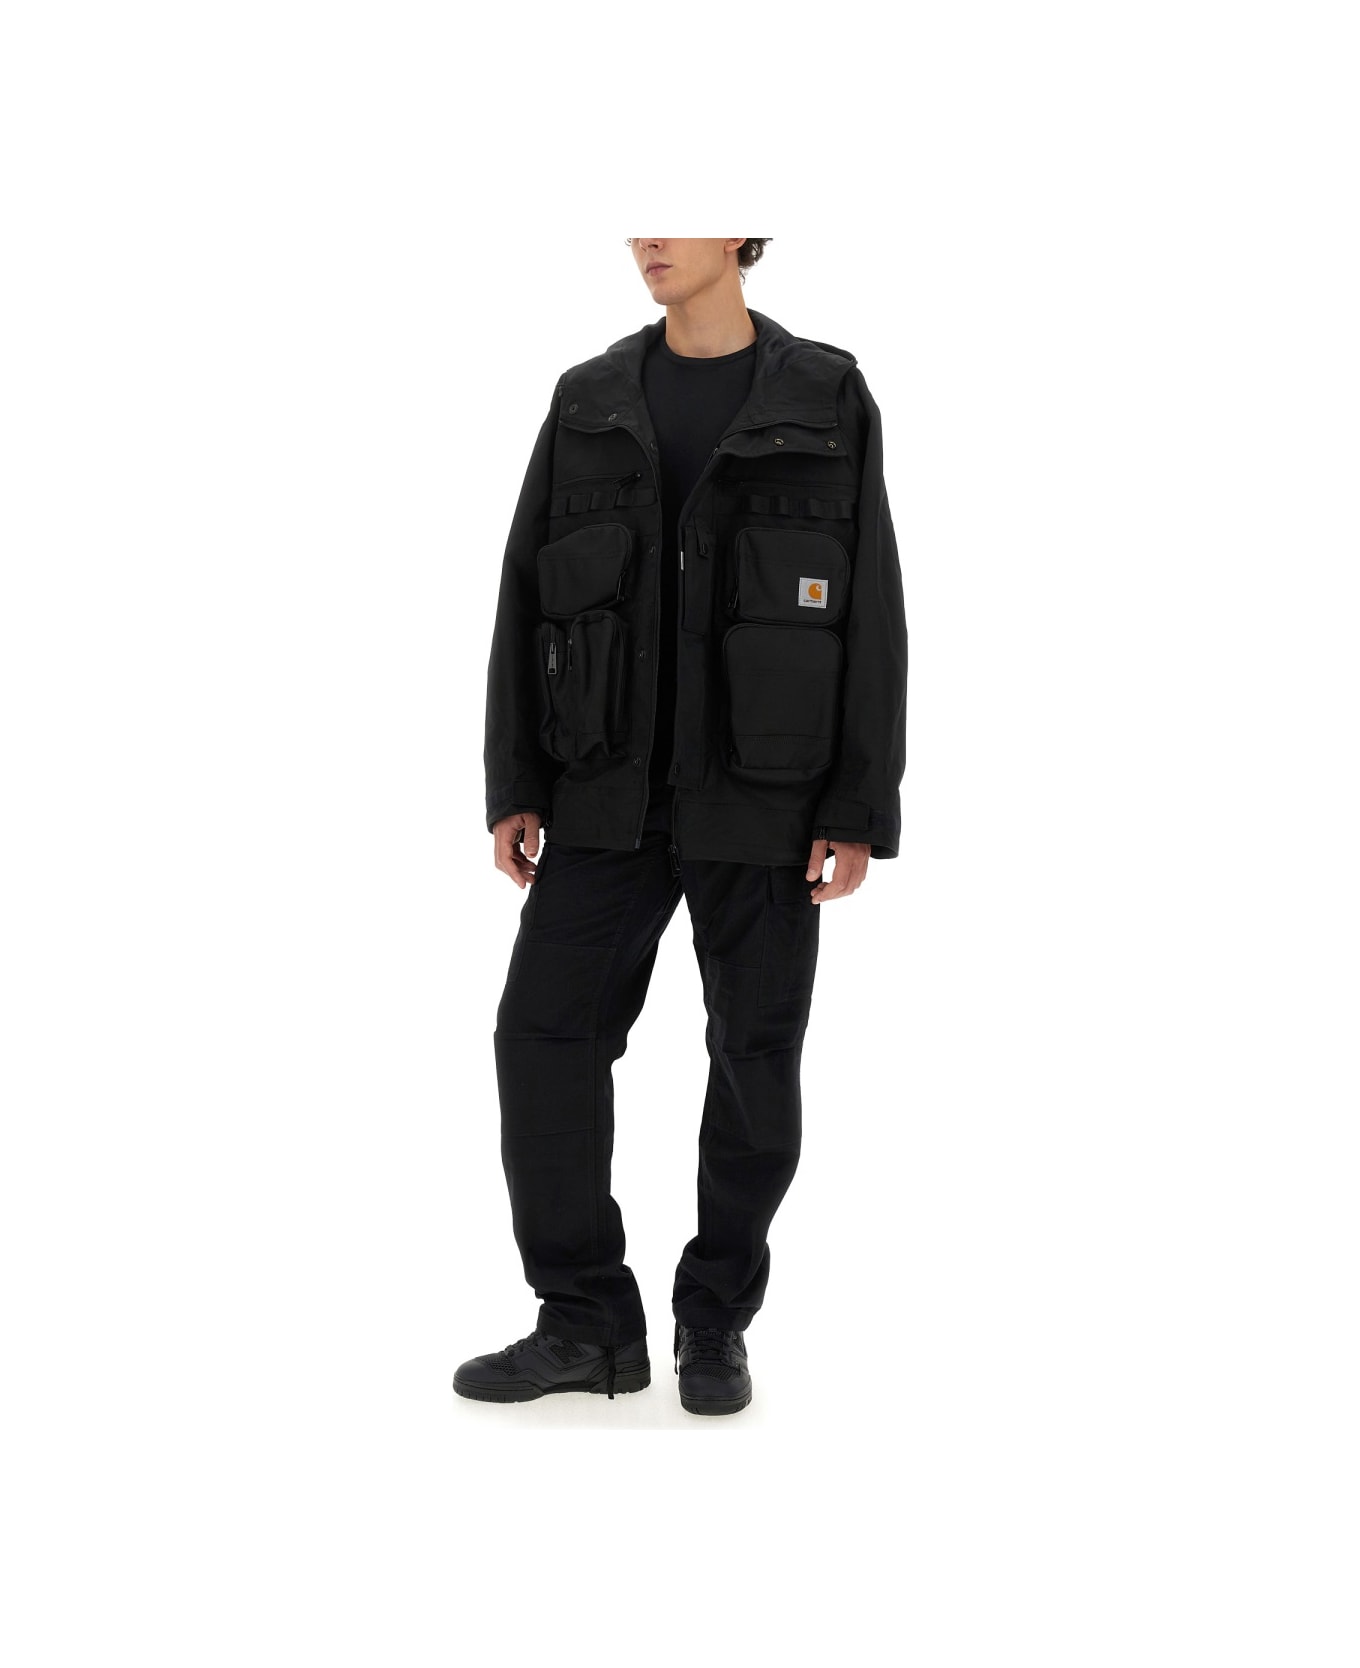 Junya Watanabe X Carhartt Jacket - BLACK